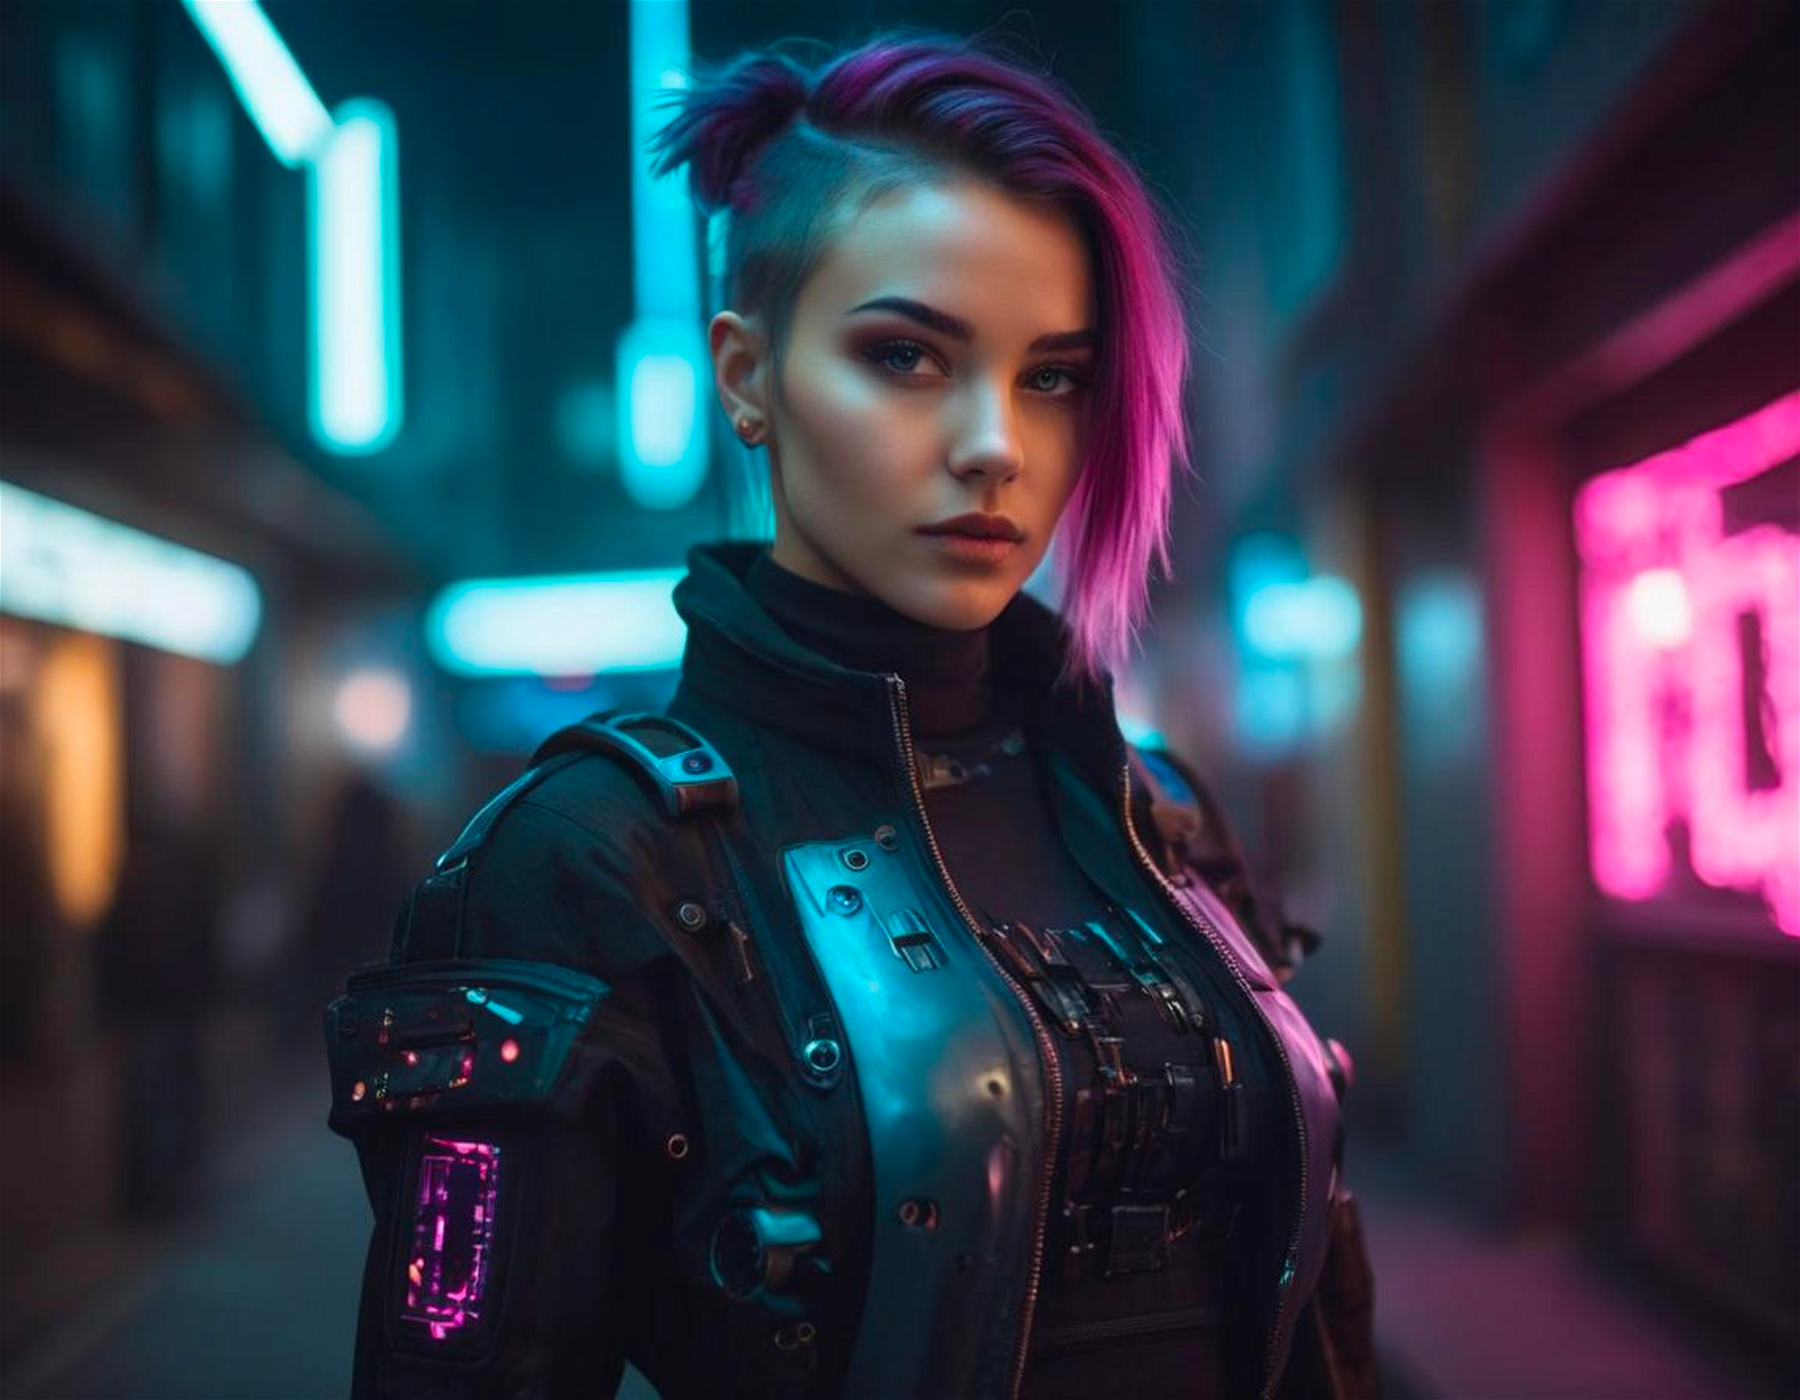 Portait of a beautiful girl, cyberpunk fashion outfit